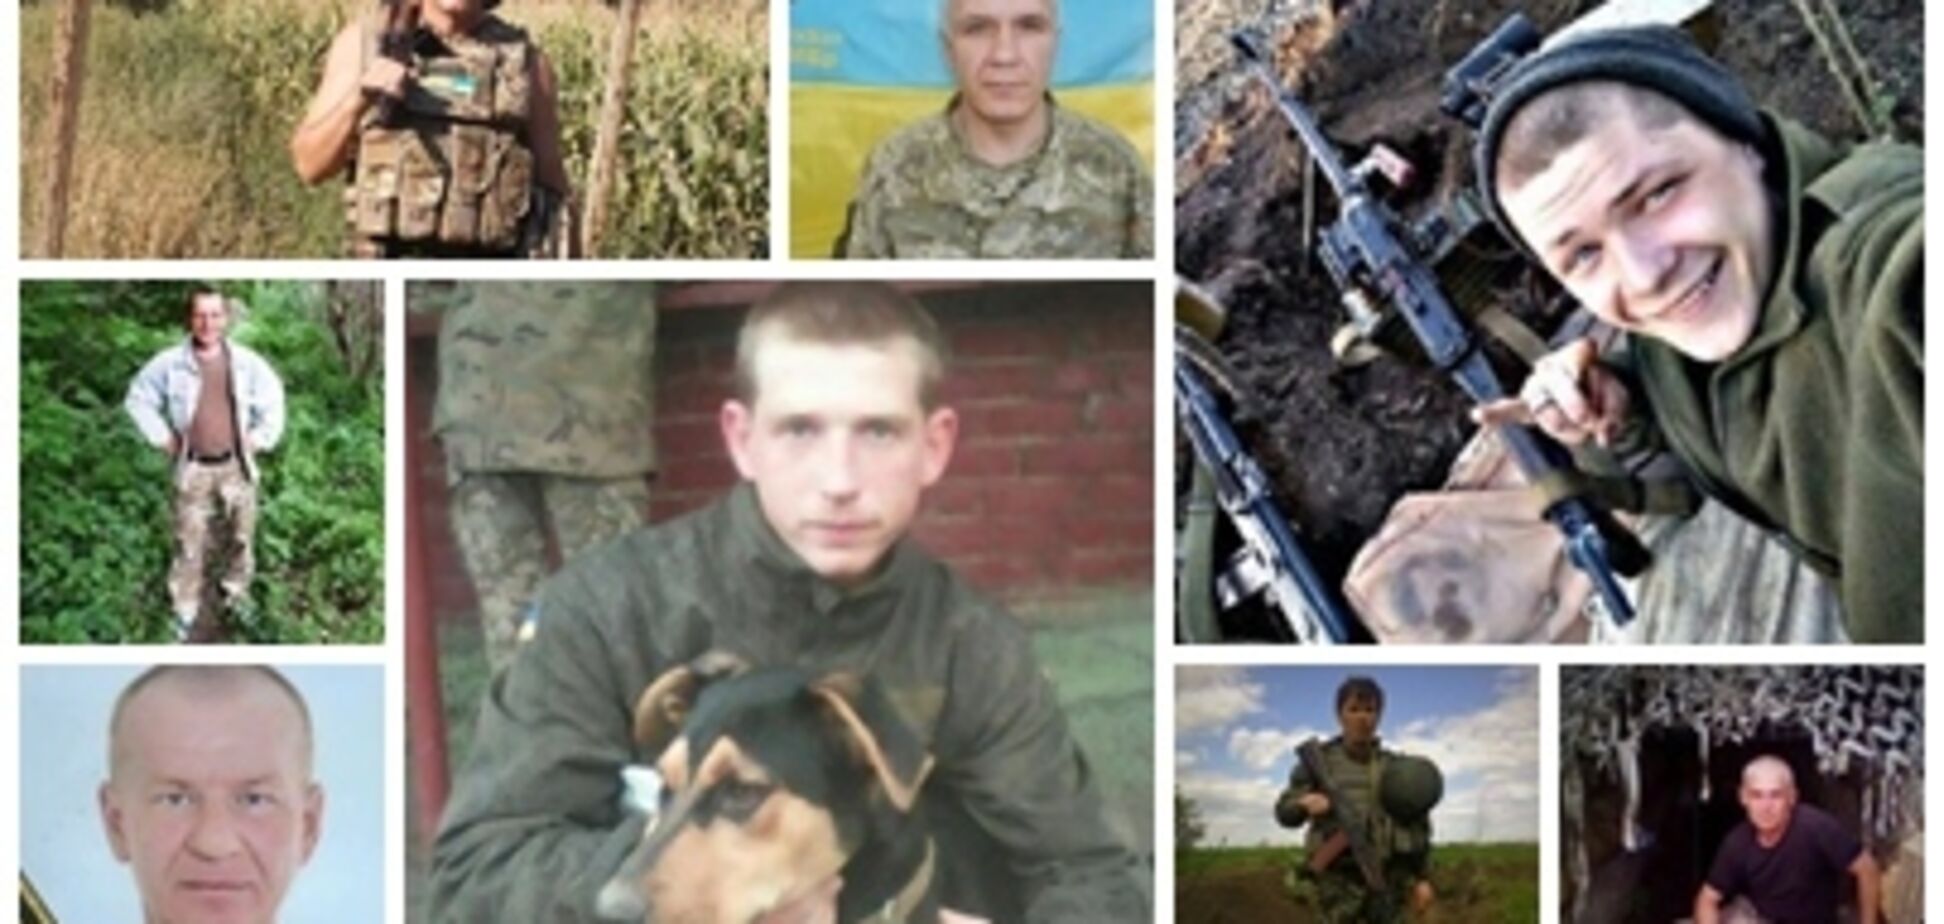 Захищали Україну: повний список бійців ЗСУ, які загинули на Донбасі у 2018 році